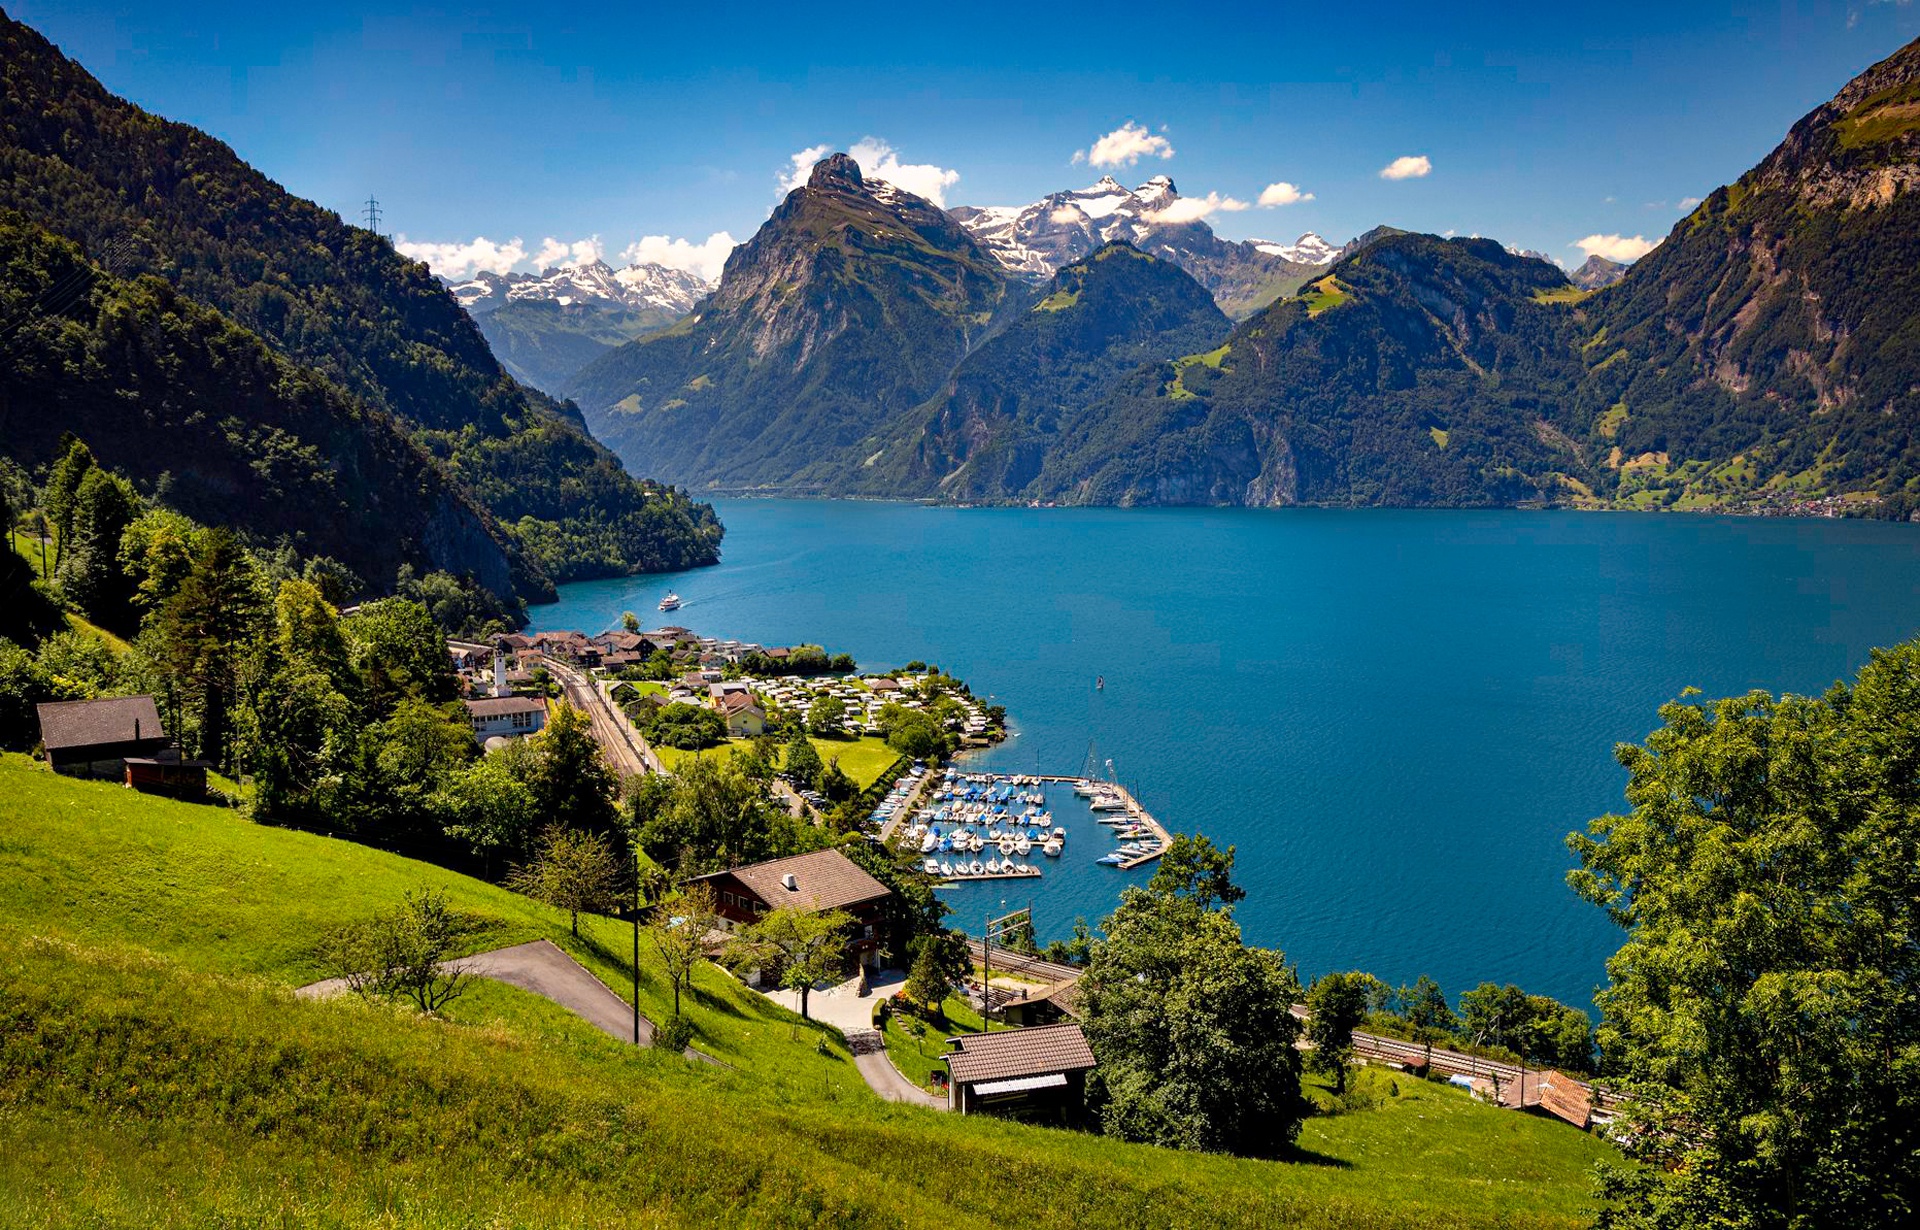 Download mobile wallpaper Mountain, Lake, Alps, Village, Switzerland, Panorama, Man Made for free.